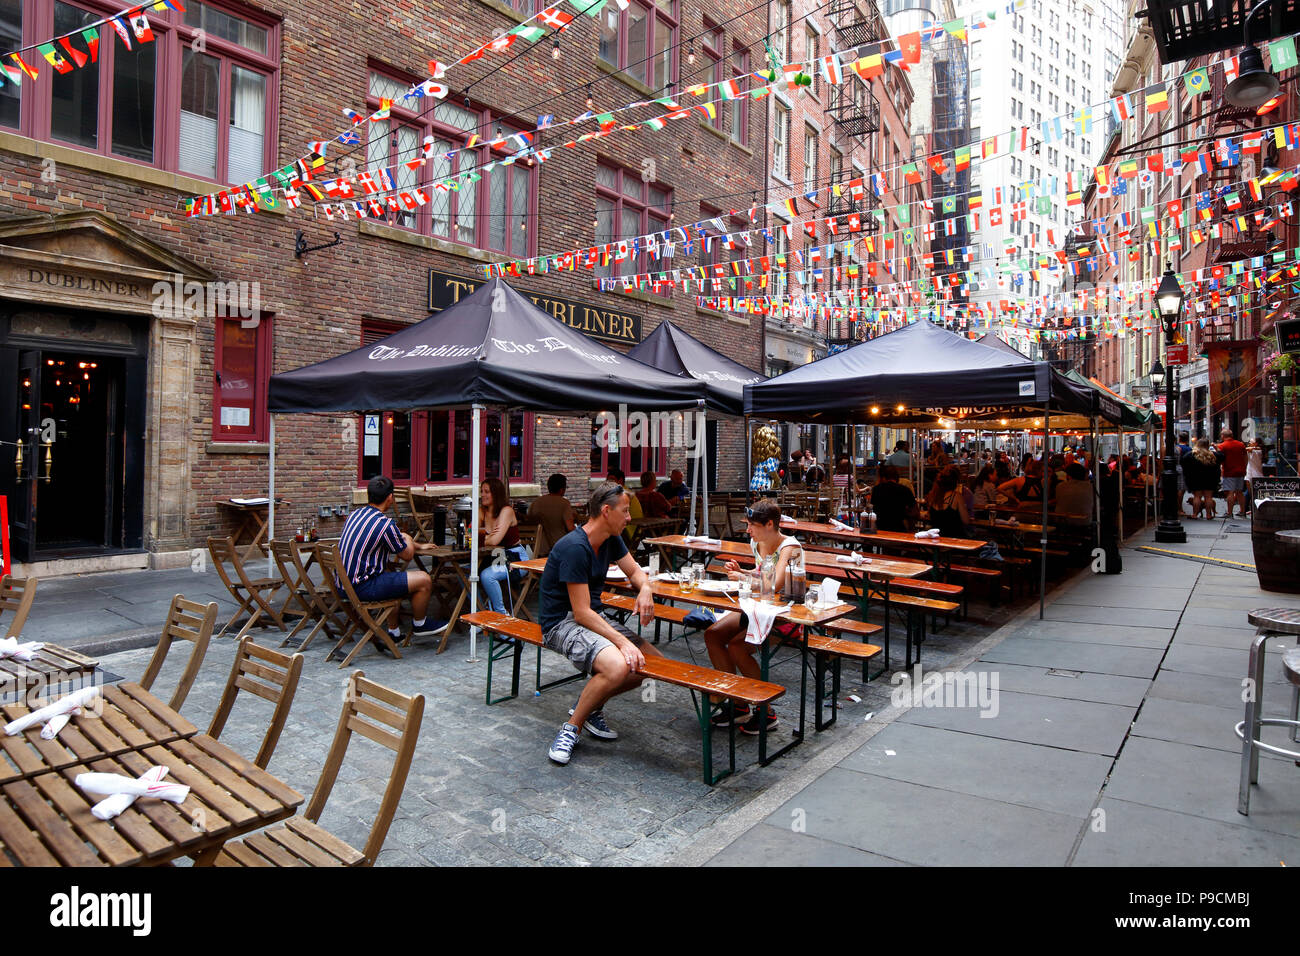 Configuration des tables de pique-nique pour les repas en plein air sur la Rue Pierre dans Lower Manhattan, New York, NY. Banque D'Images